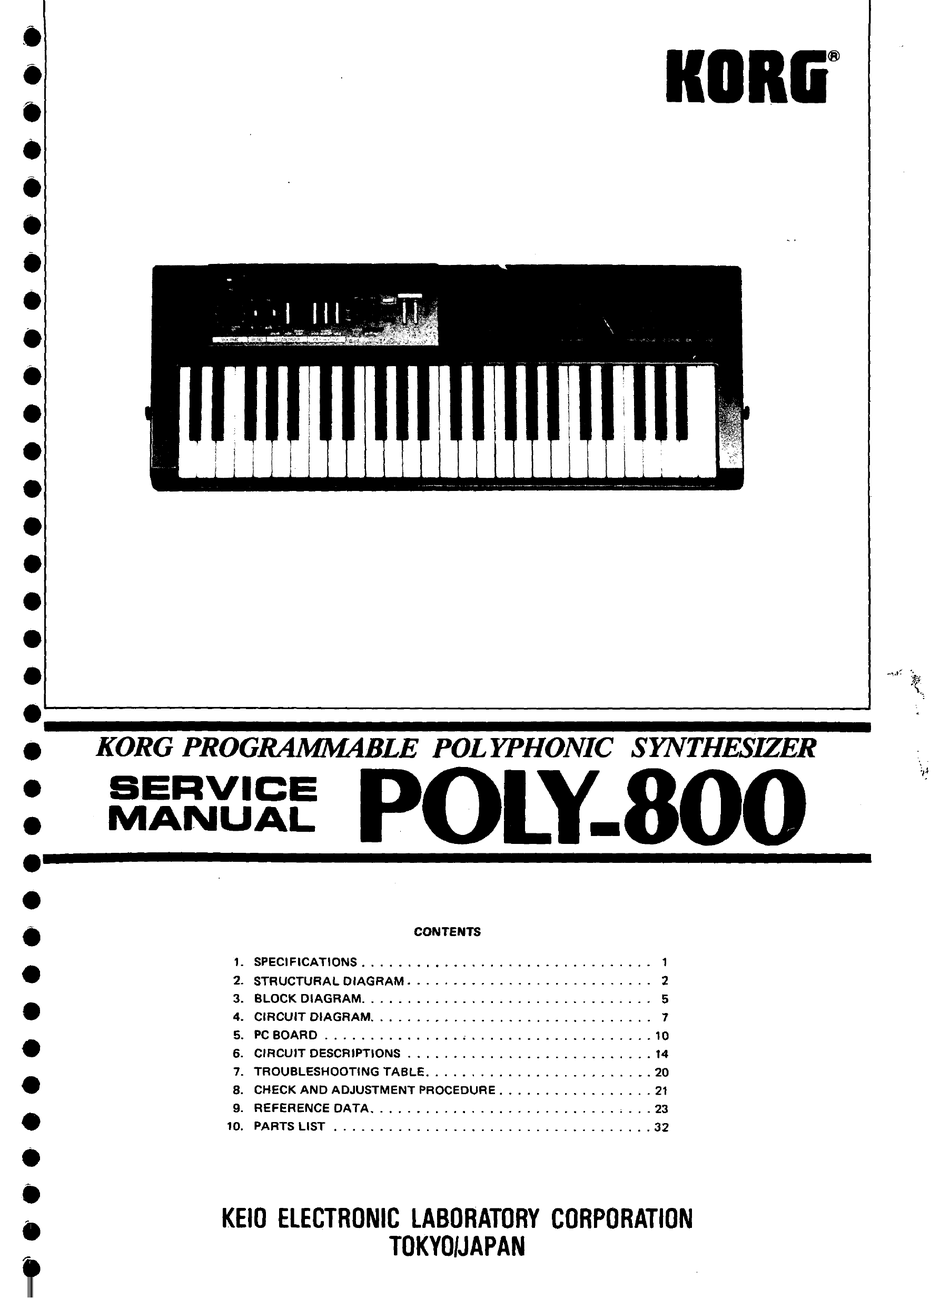 korg poly 800 manual